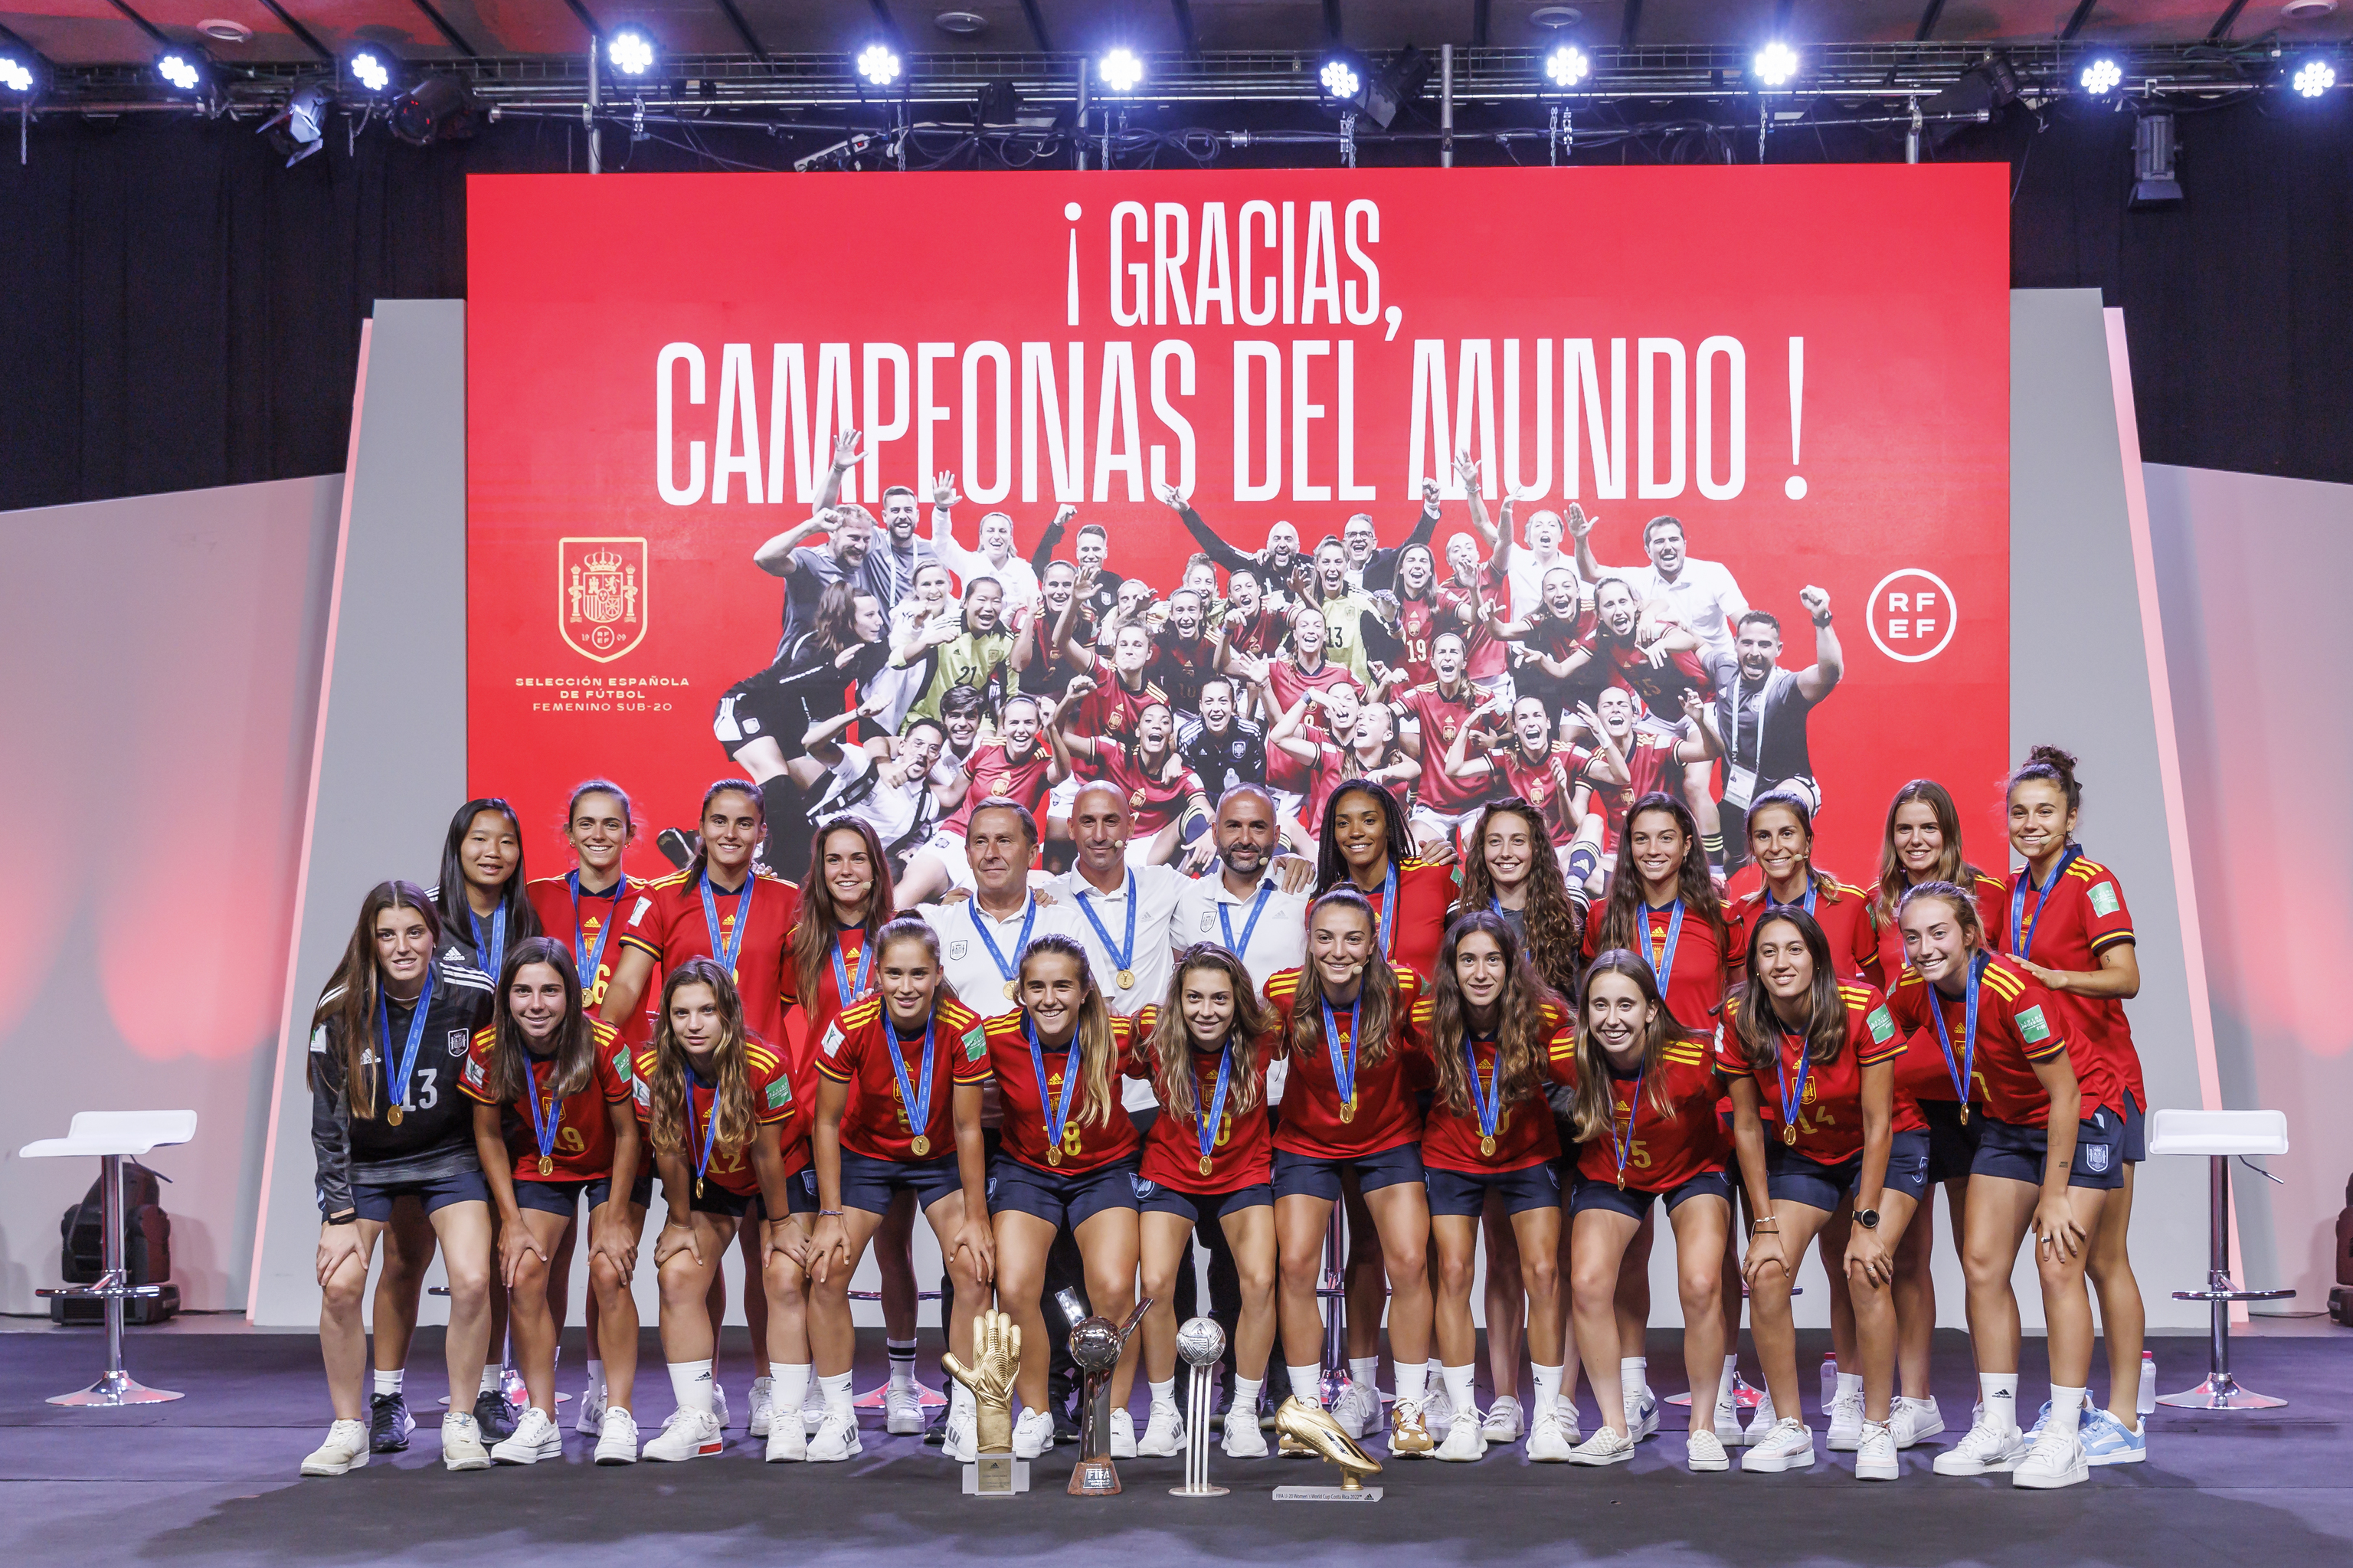 2022 Qatar: La fiesta de chicas de la selección española sub'20: "Esta sensación inexplicable" | Mundial 2022